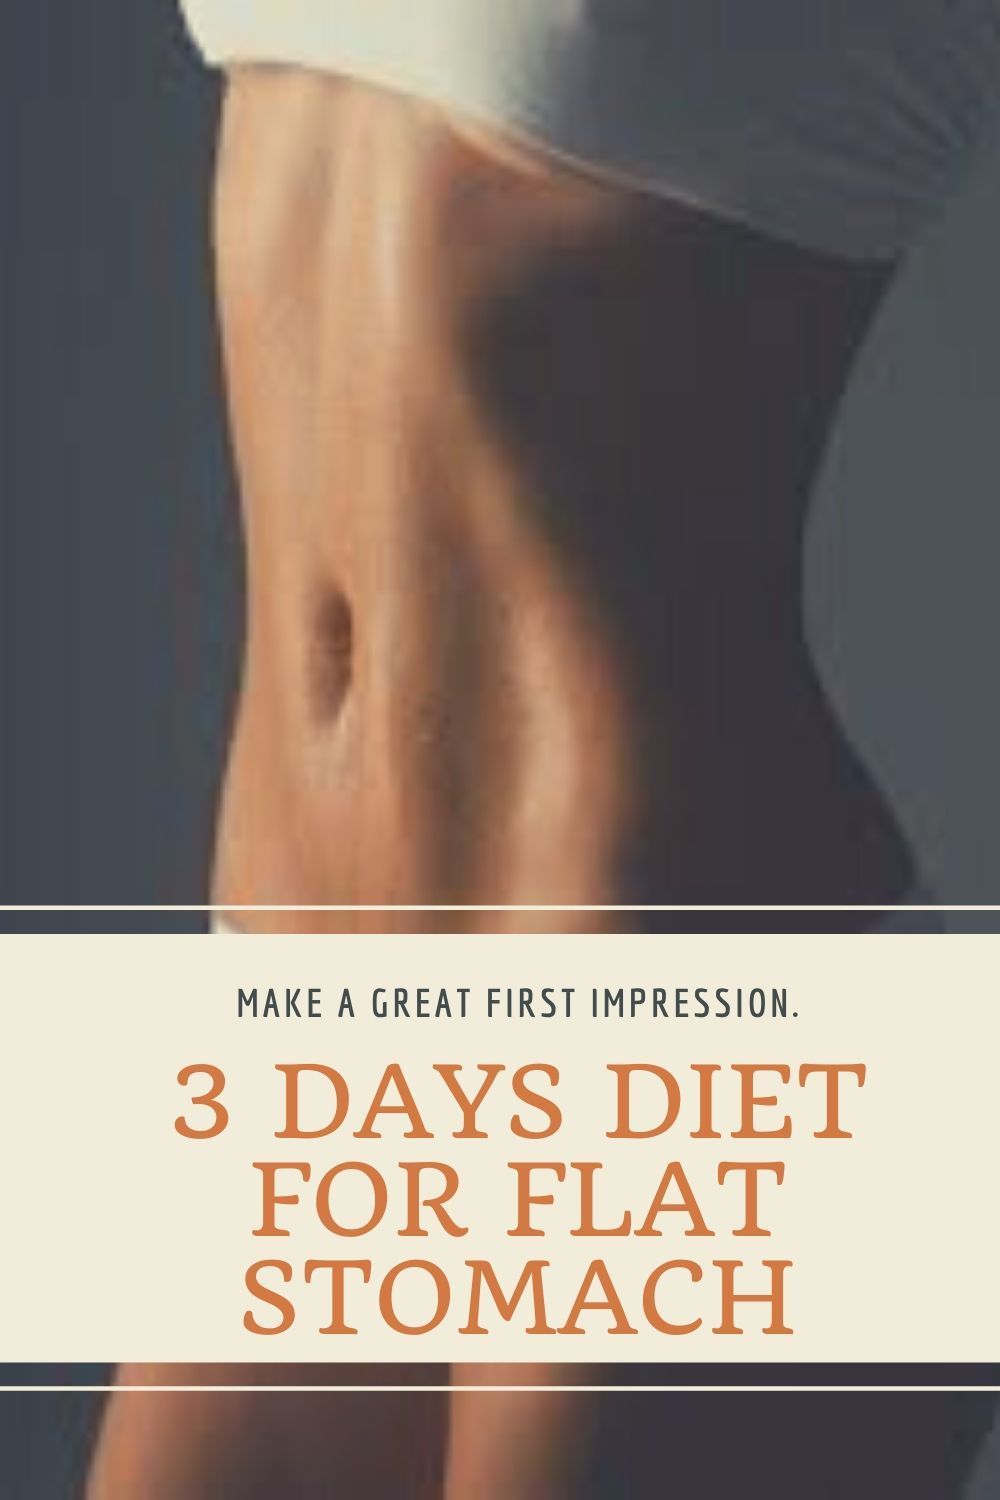 3 Days Diet For Flat Stomach -   9 diet 3 Day motivation ideas